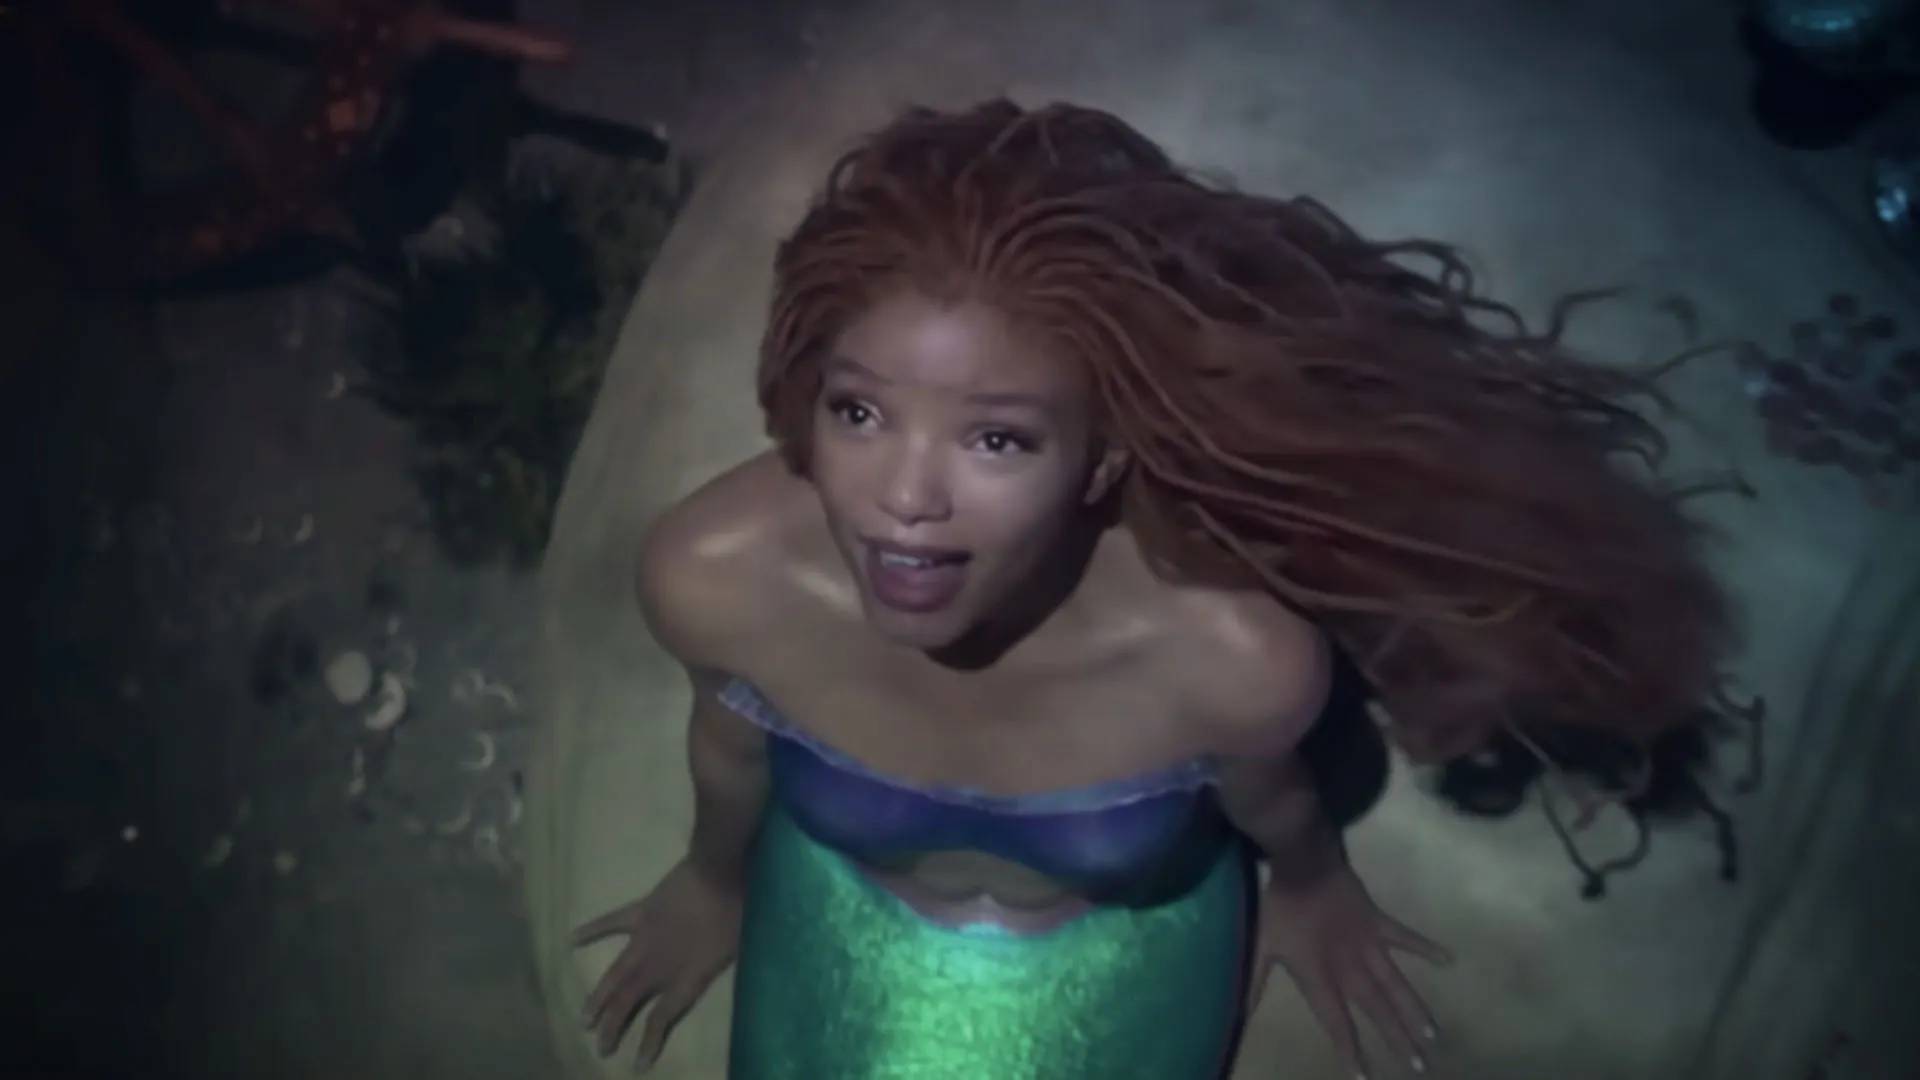 La Sirenita: Una princesa bajo el mar - Filmin